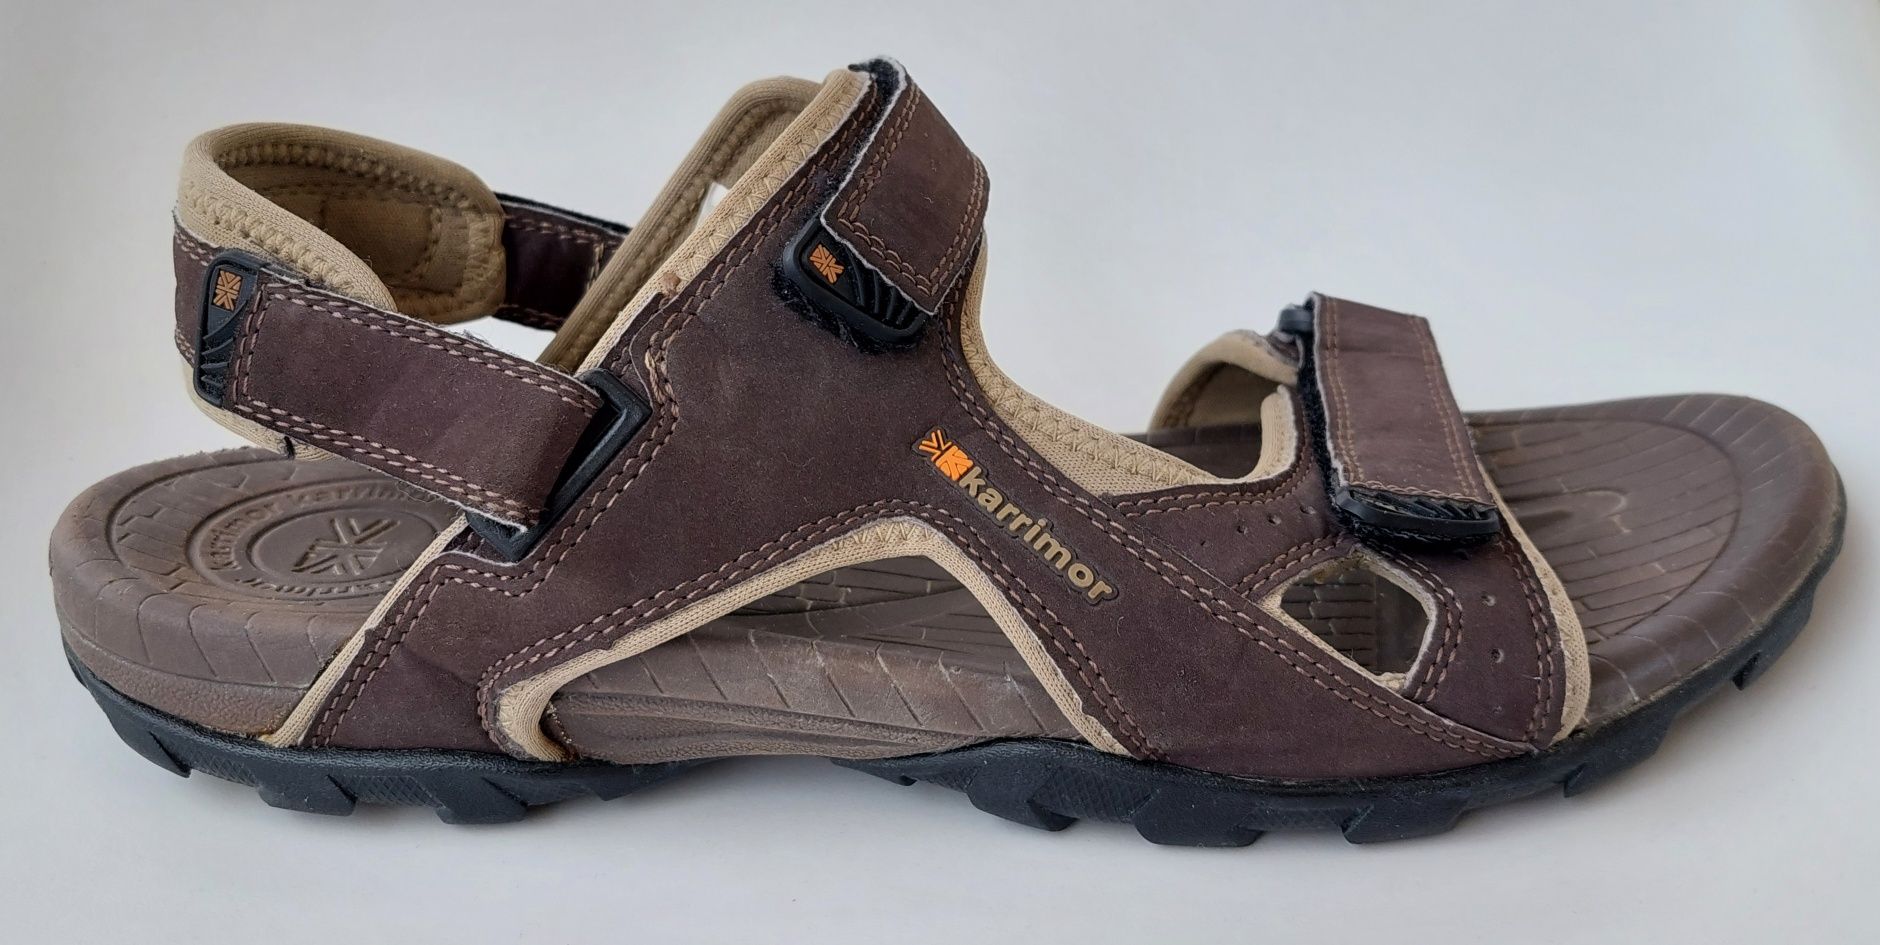 Buty sandały trekkingowe Karrimor Antibes roz.44,5 klapki 2w1